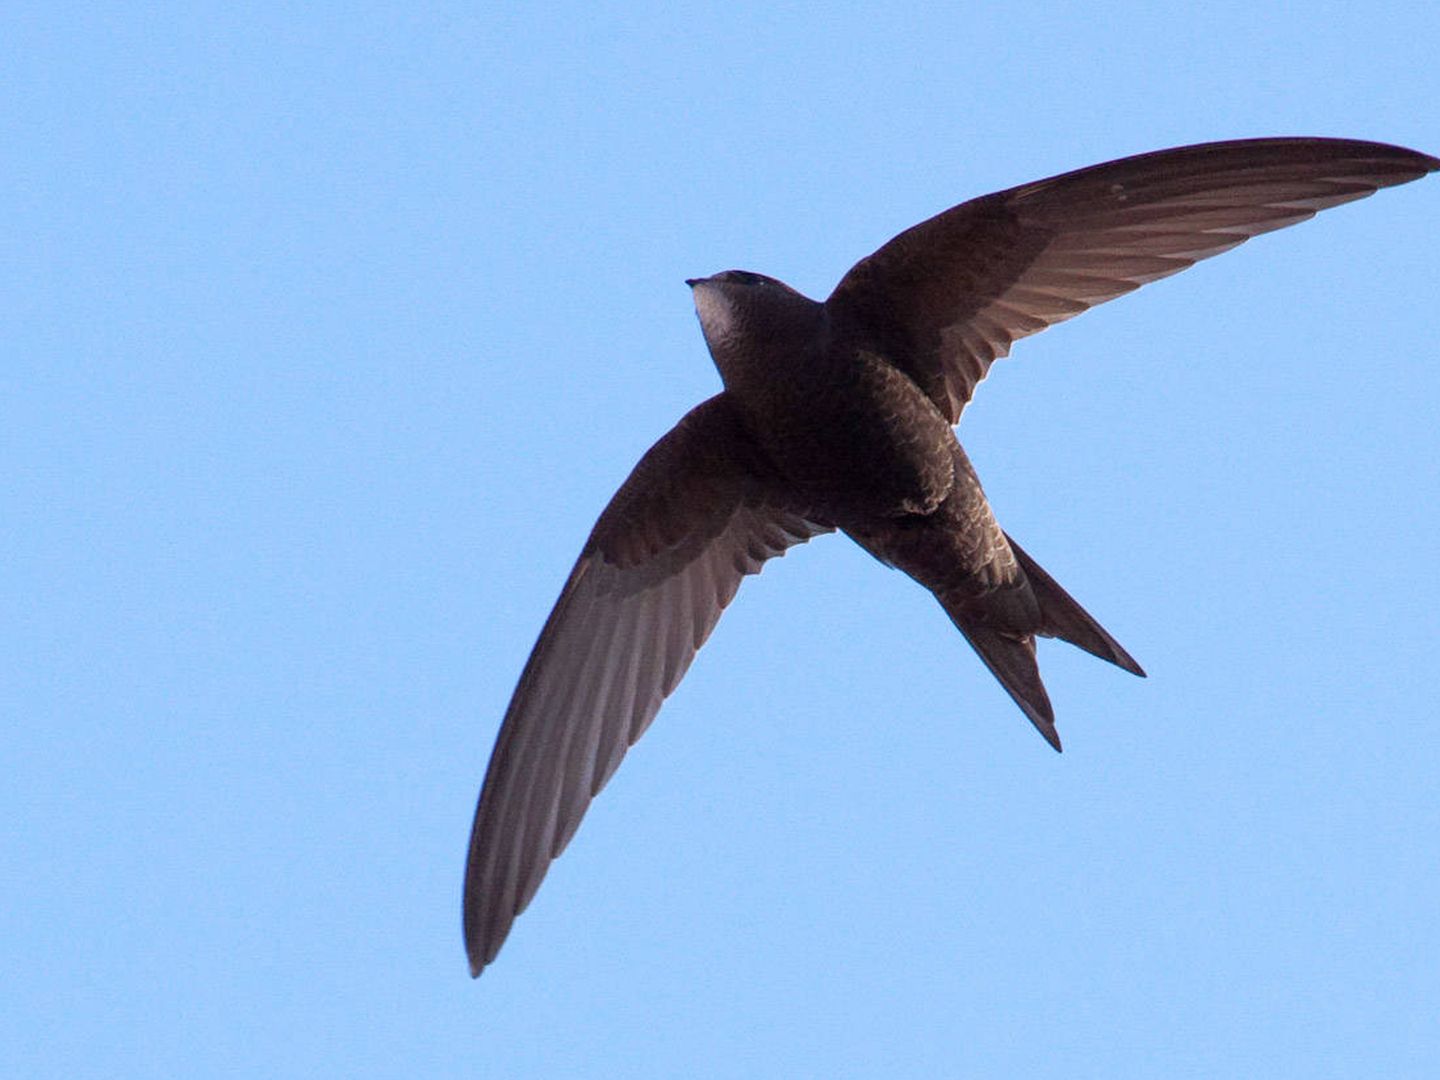 El vencejo es un ave que a menudo se confunde con las golondrinas, pero es más grande y tiene las alas más afiladas y la cola más corta.